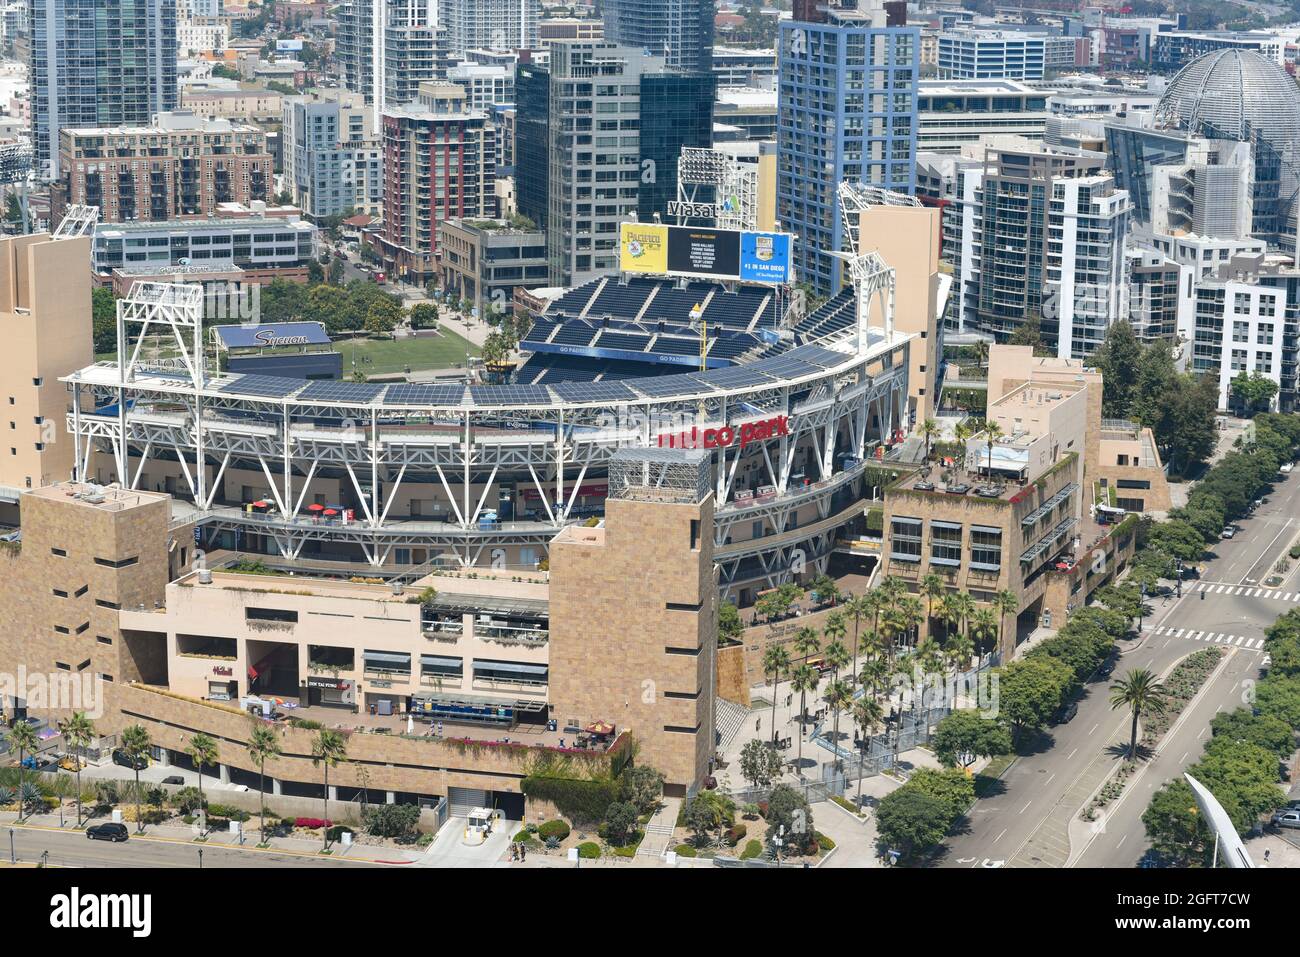 SAN DIEGO (CALIFORNIE) - 25 AOÛT 2021 : Petco Field, stade des San Diego Padres de la division ouest de la Ligue nationale de baseball des grandes ligues. Banque D'Images